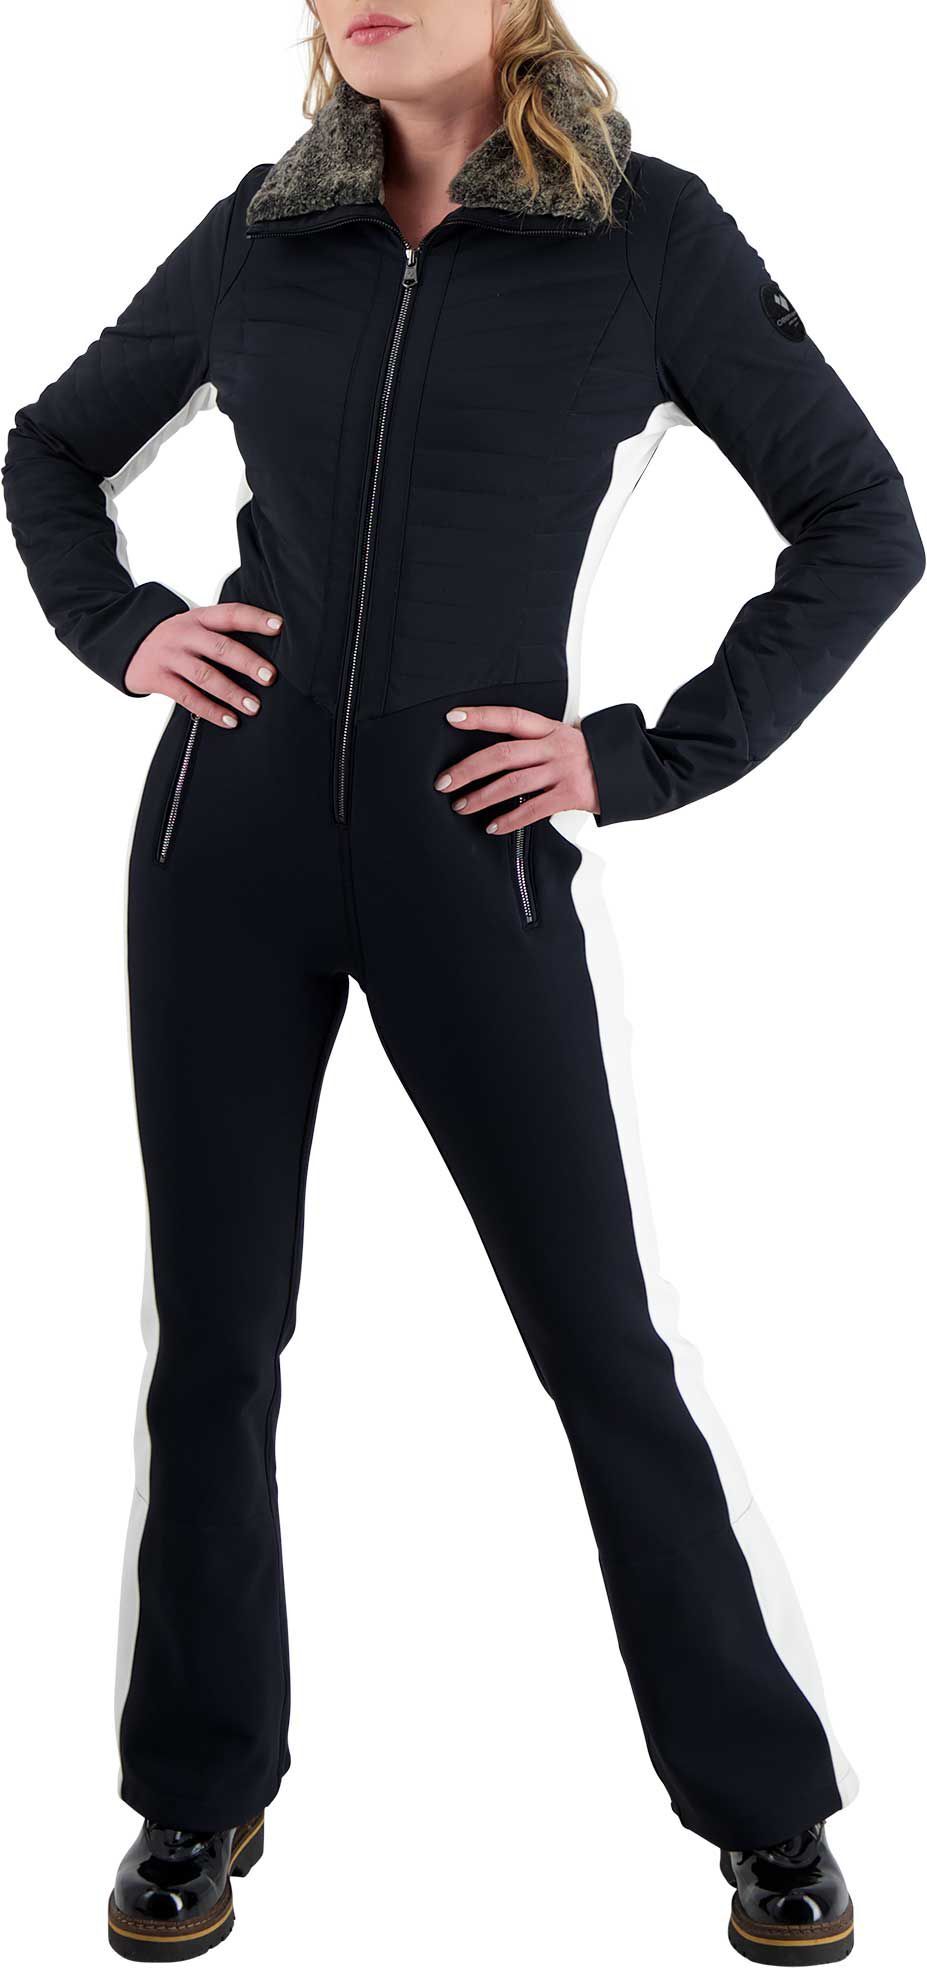 Photos - Ski Wear Obermeyer Women's Katze Winter Suit, Size 10, Black 20obewwktzstxxxxxapo